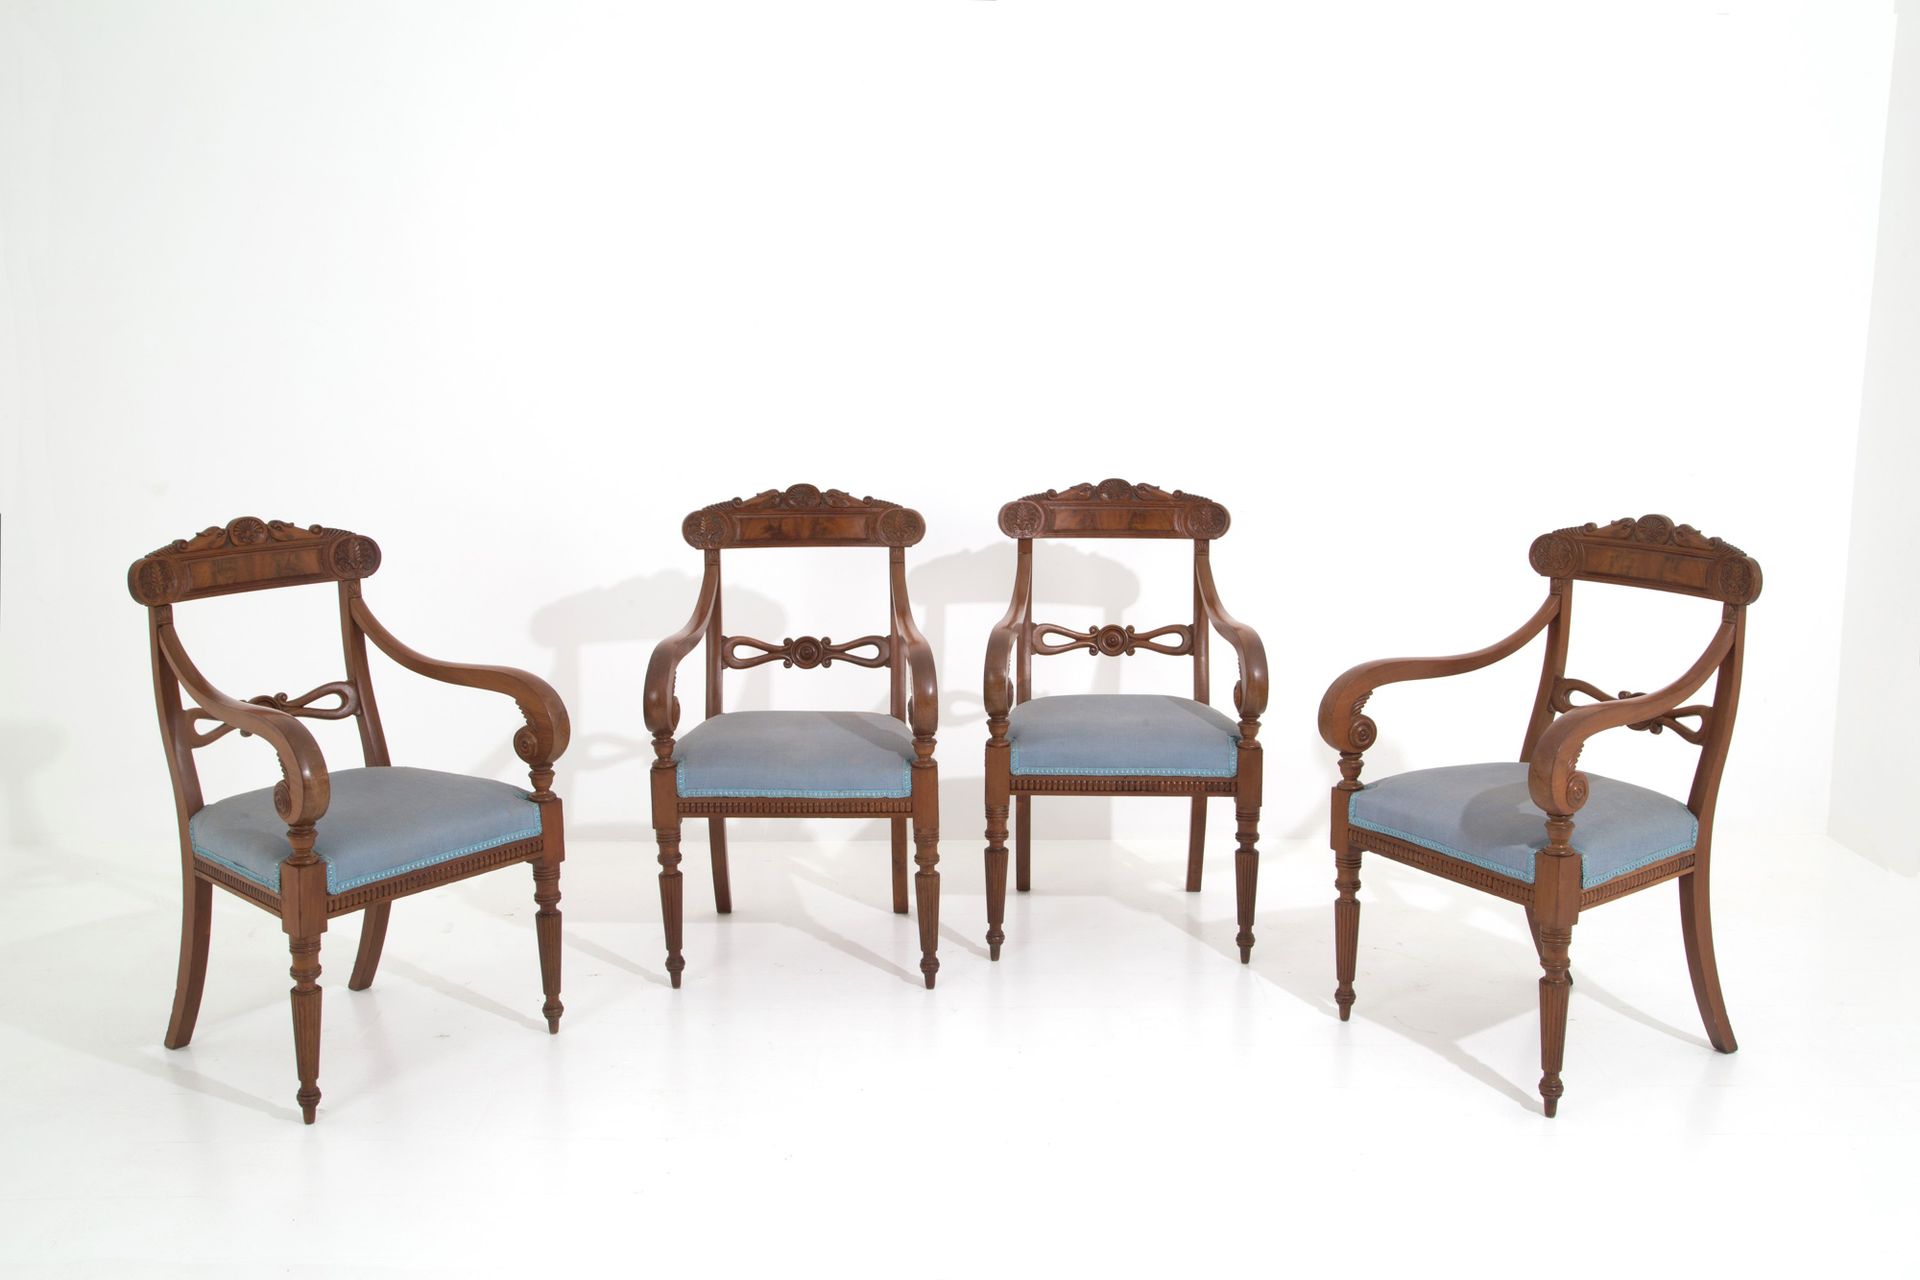 Four armchairs 四把桃花心木扶手椅，精雕细琢的花卉和动物图案，浅蓝色棉质软垫座椅。佩特斯研讨会。热那亚。19世纪。95x57x50厘米左右。